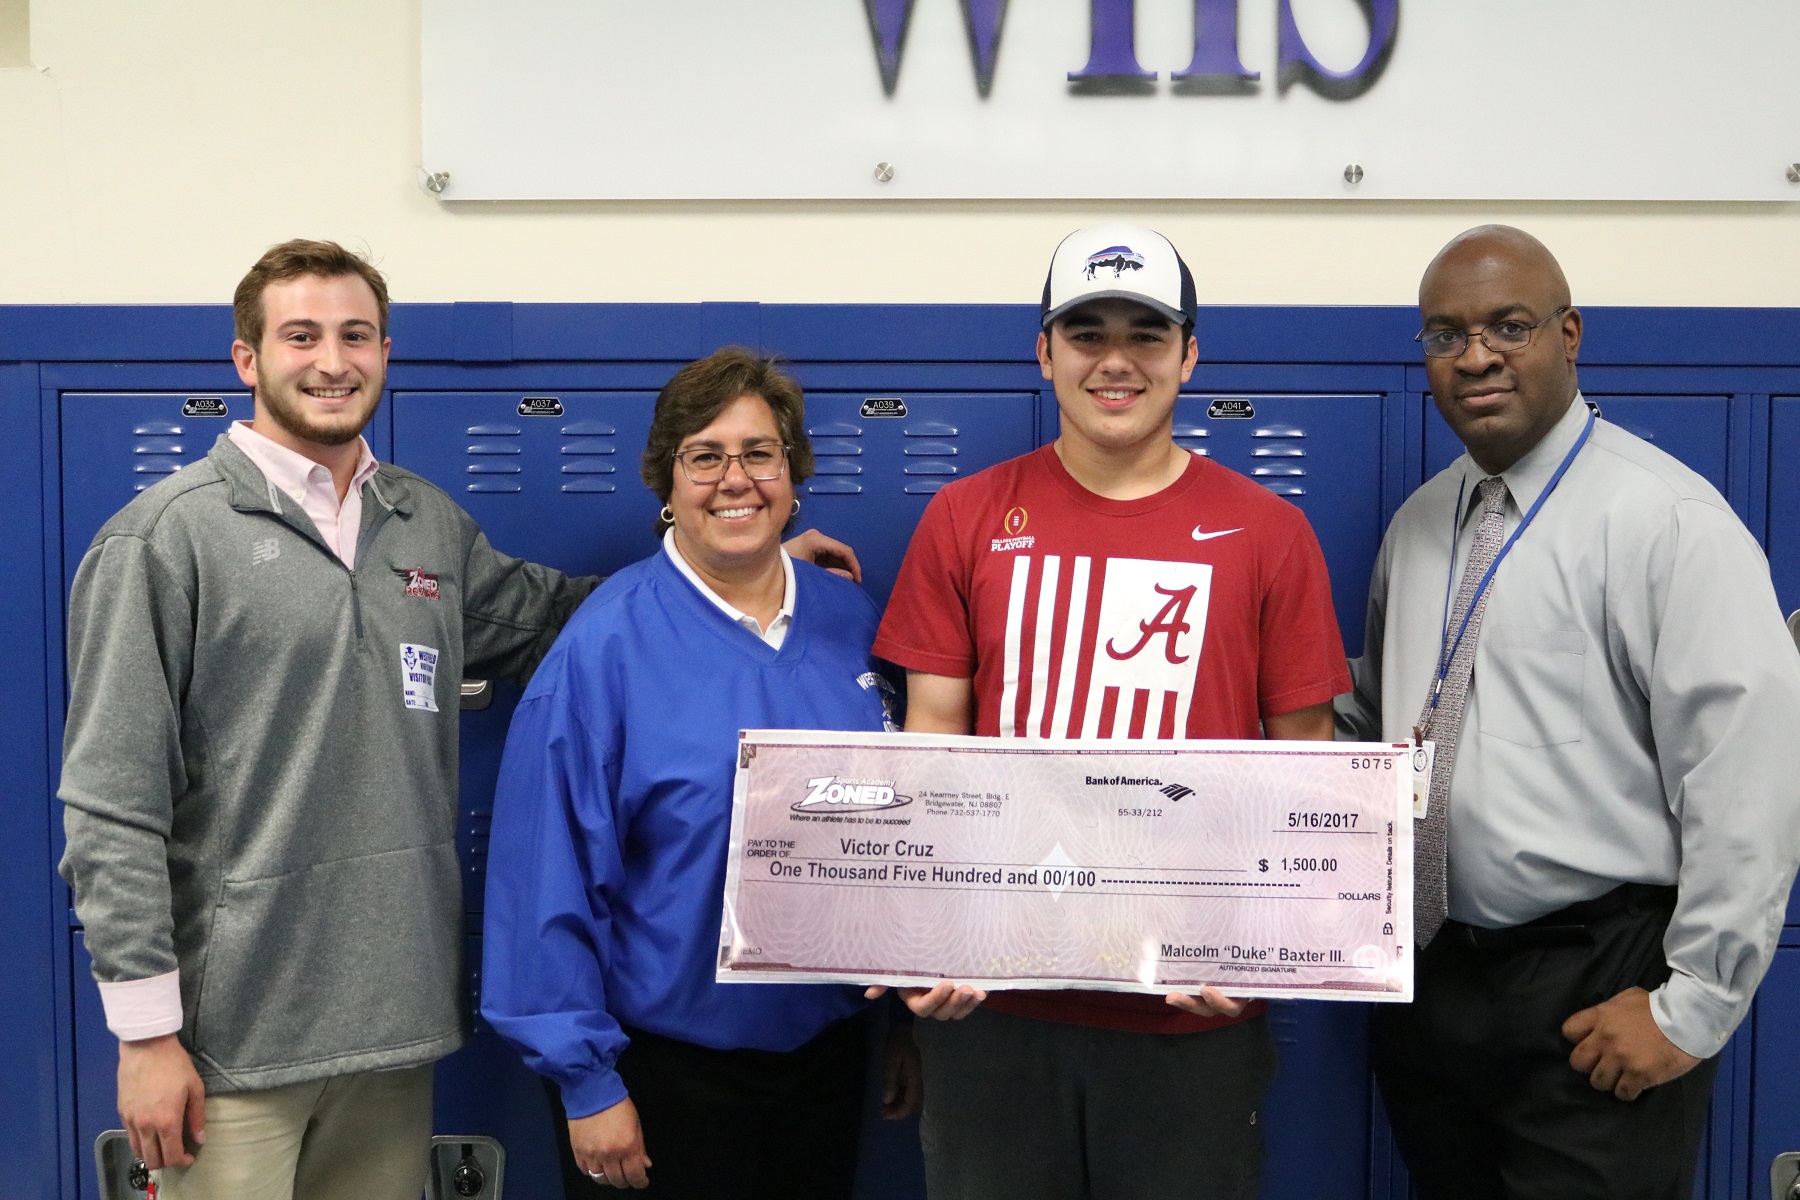 Victor Cruz of Westfield High School Wins ZONED Scholarship